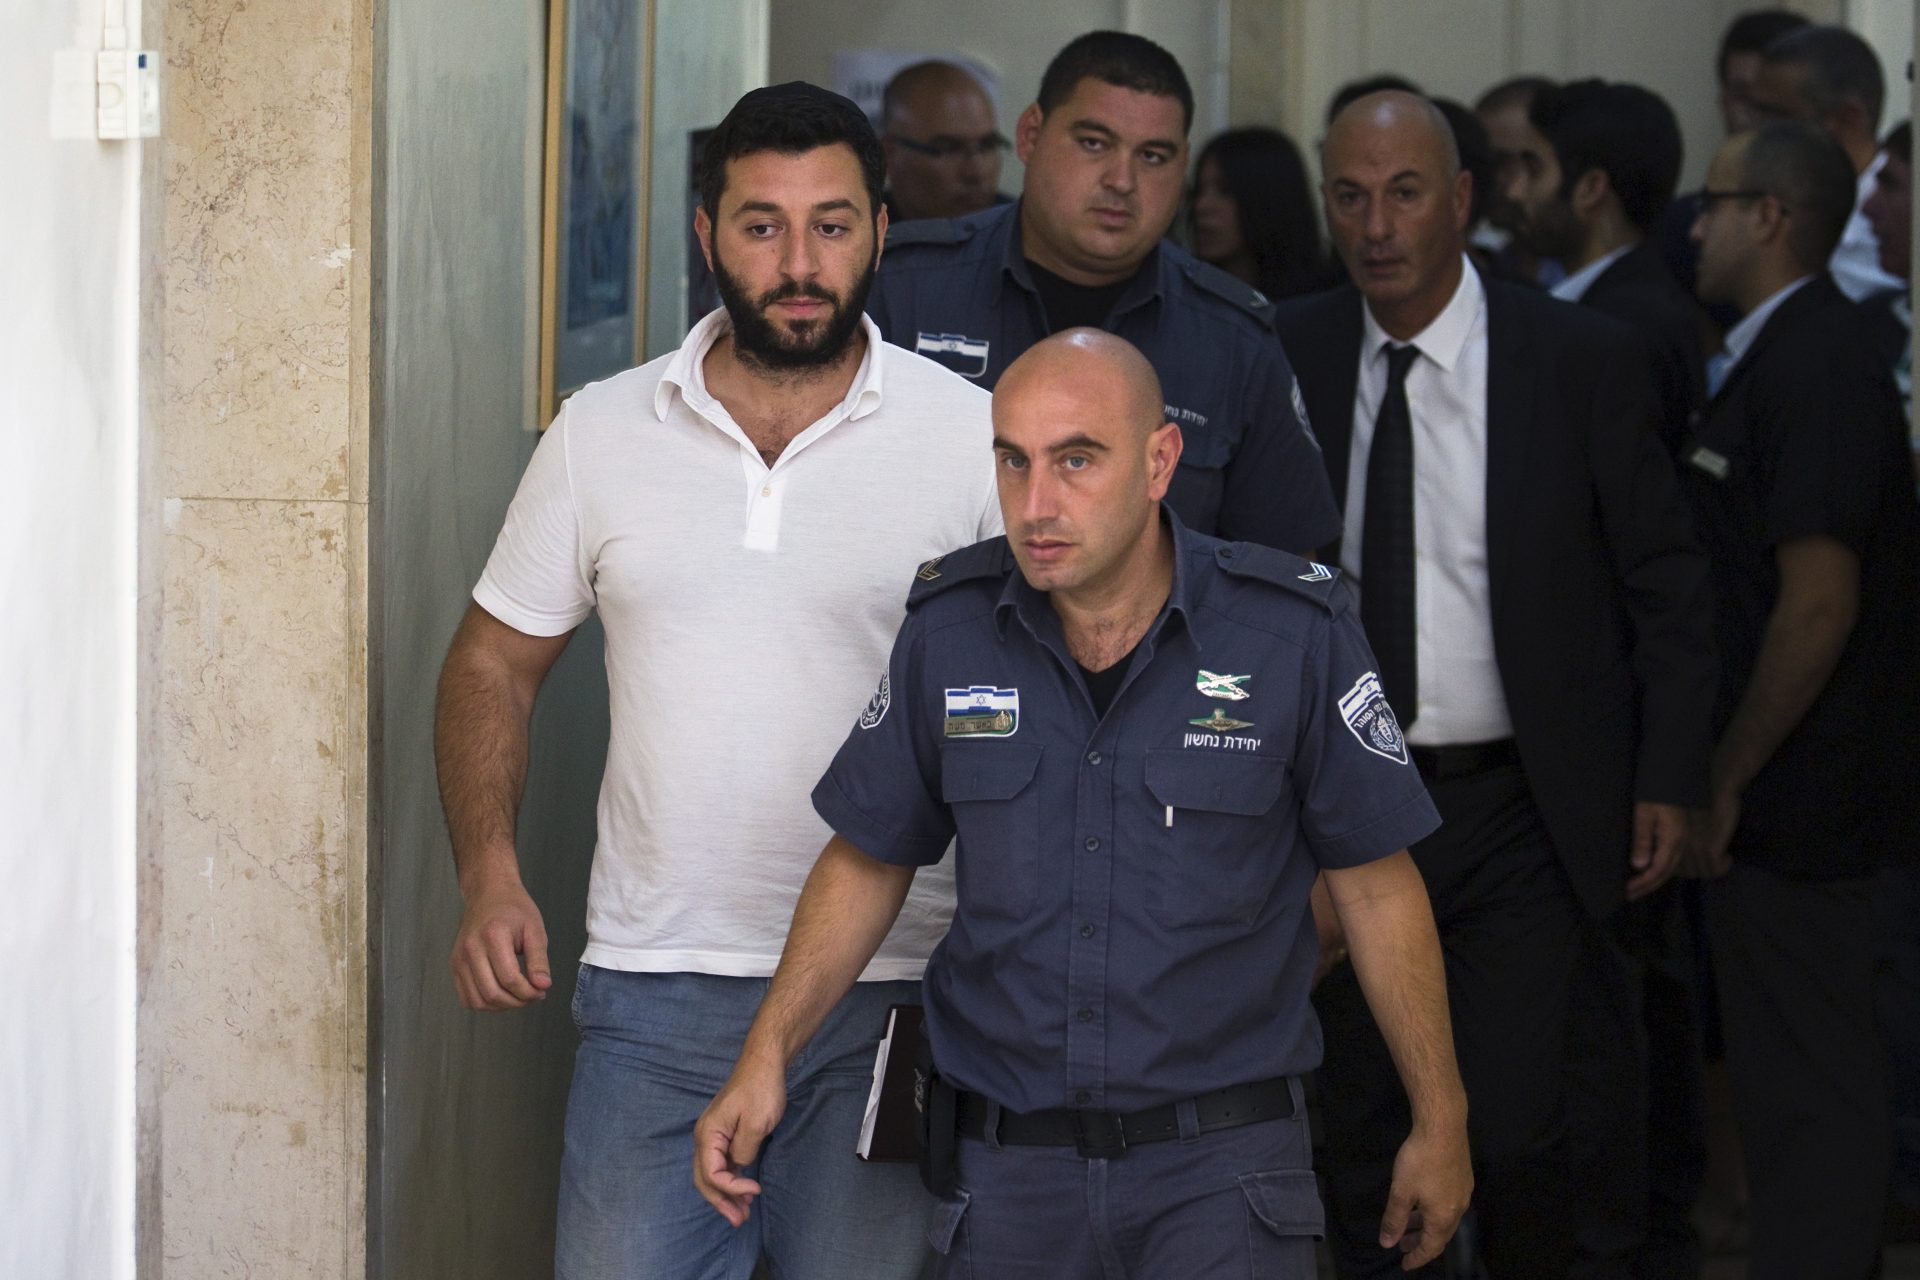 L'Europe veut arrêter un Israélien pour empire criminel en ligne